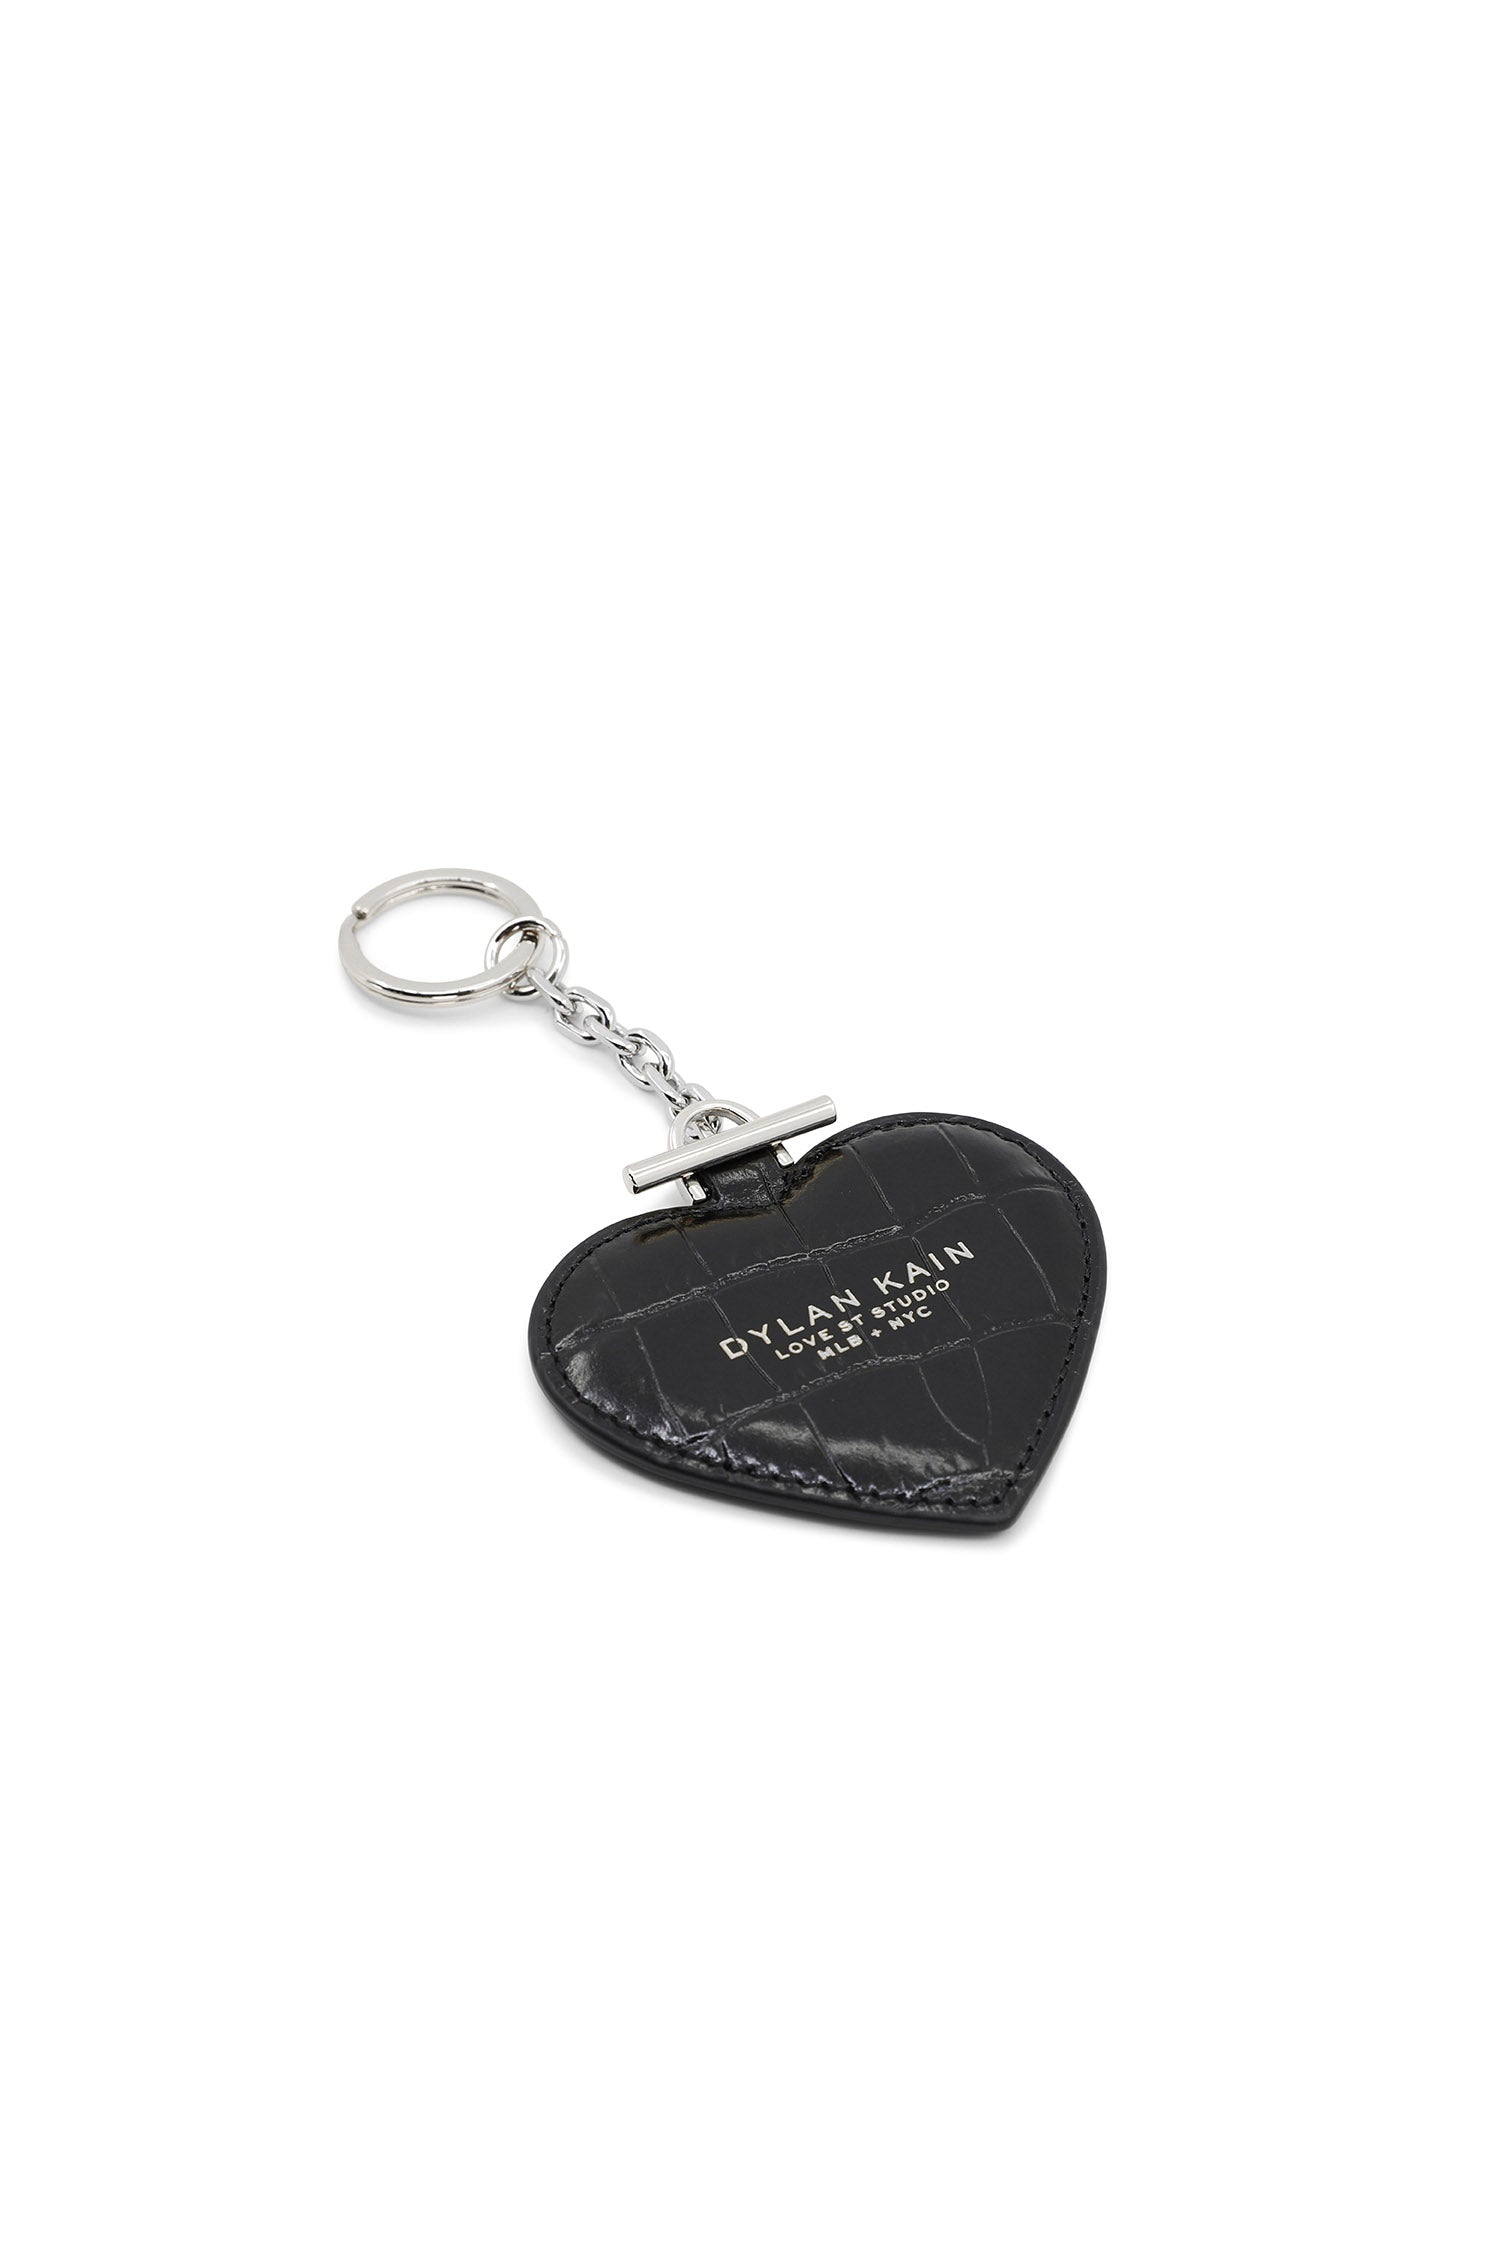 Dylan Kain Heart Keychain Silver